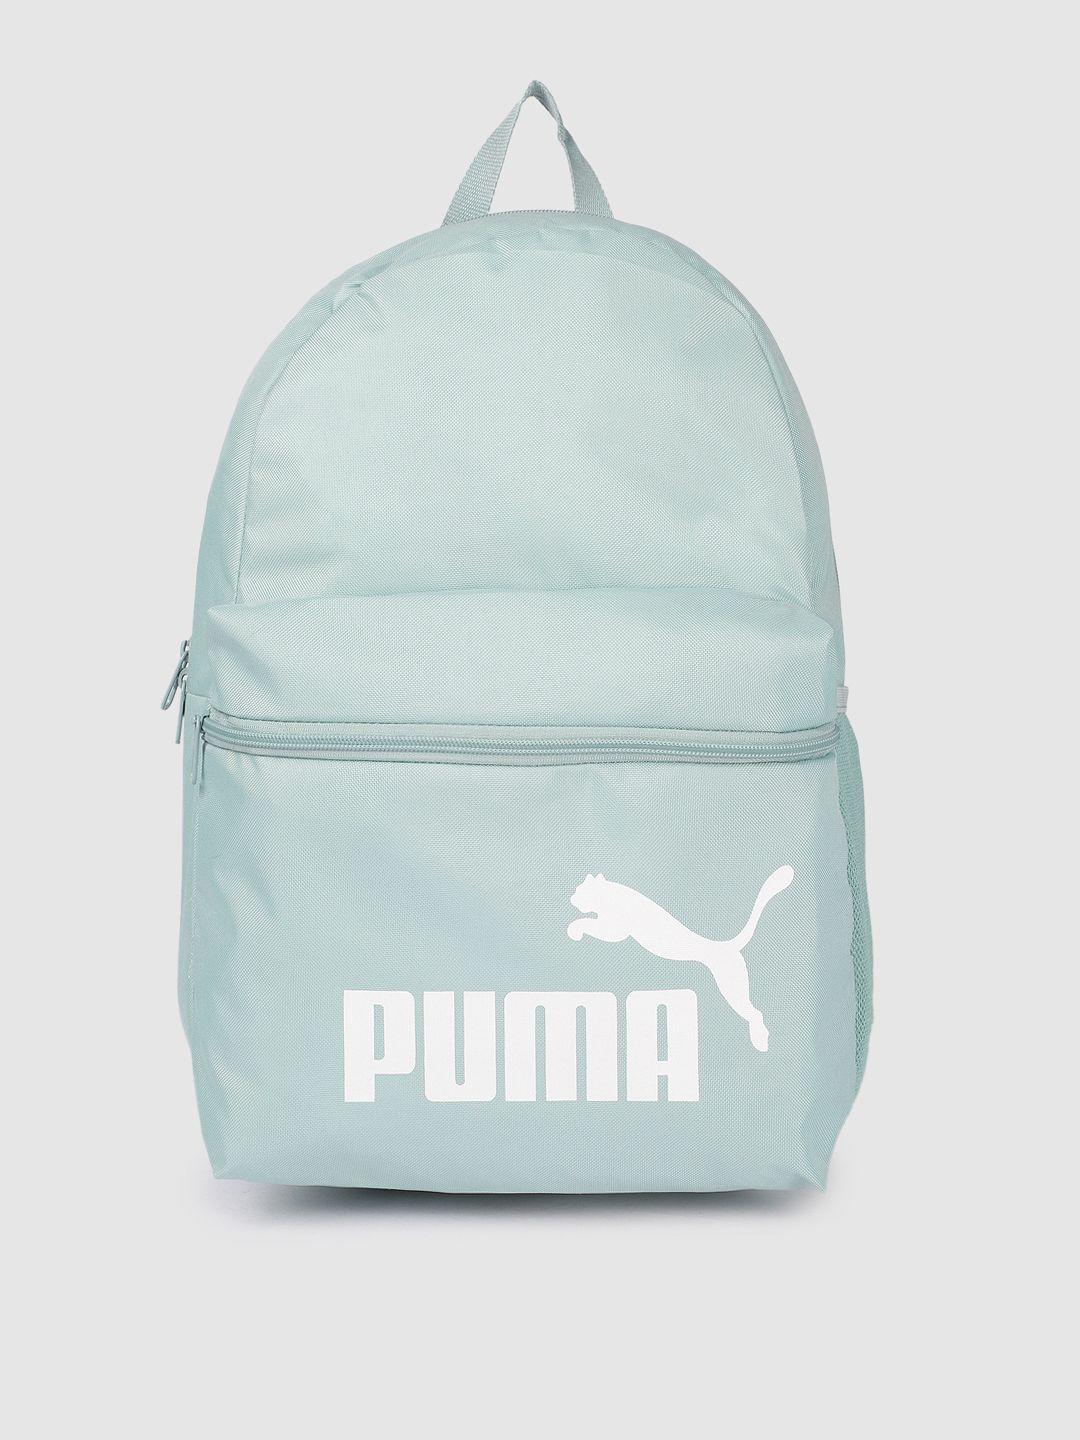 Puma Unisex Brand Logo Printed Phase Backpack